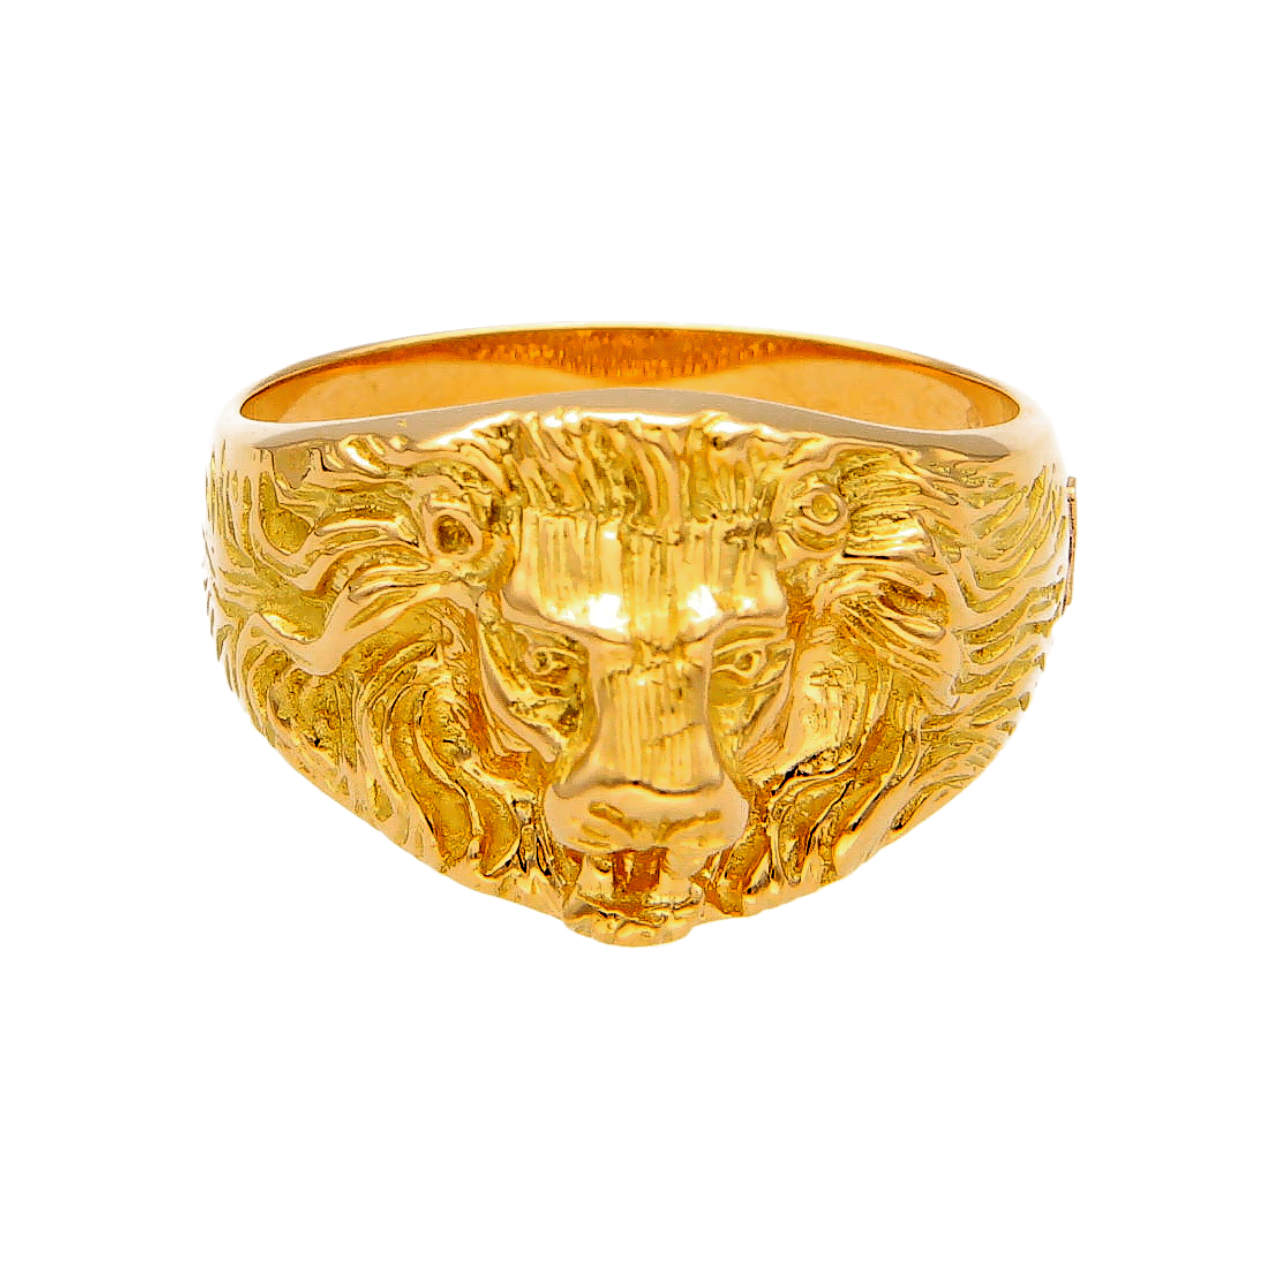 Löwe Ring aus Gelbgold